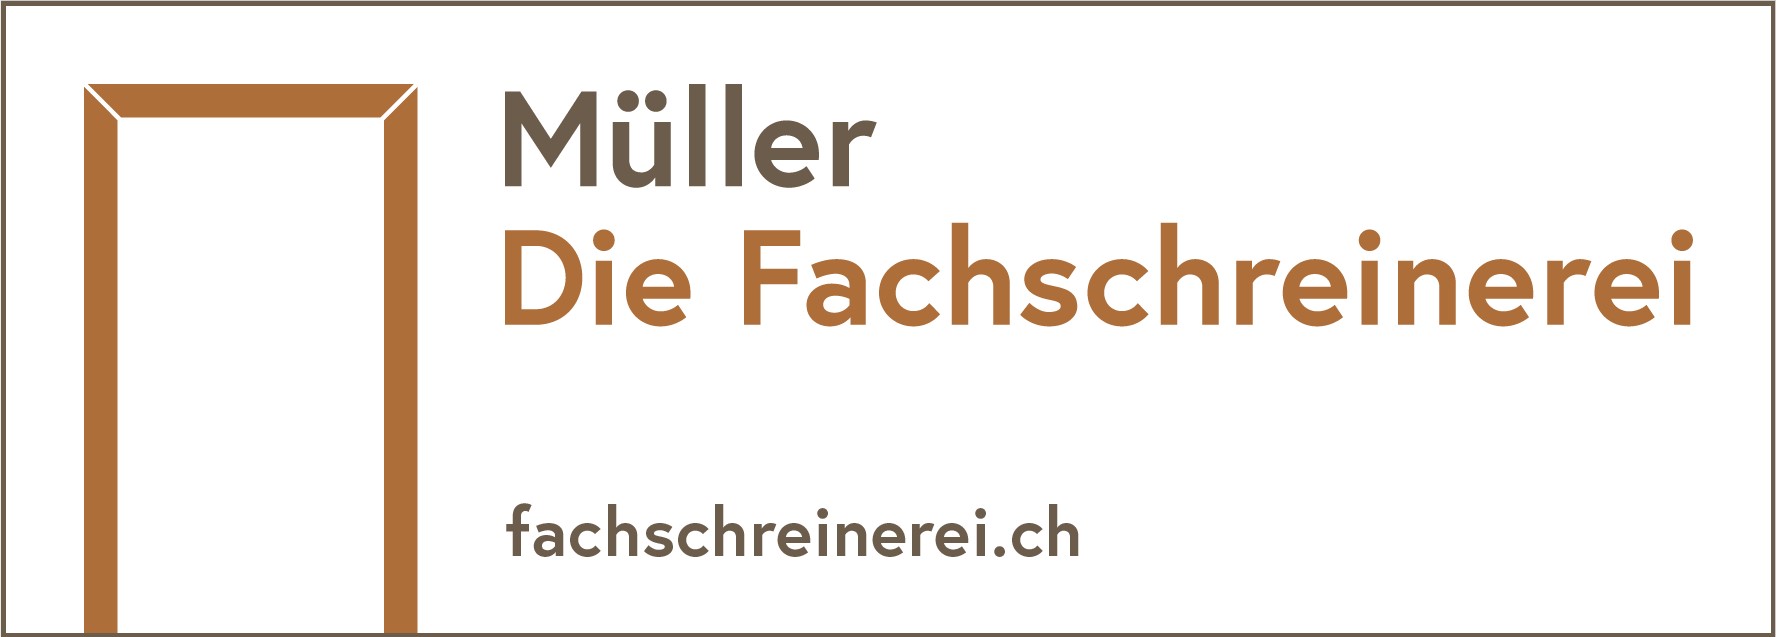 Müller Die Fachschreinerei